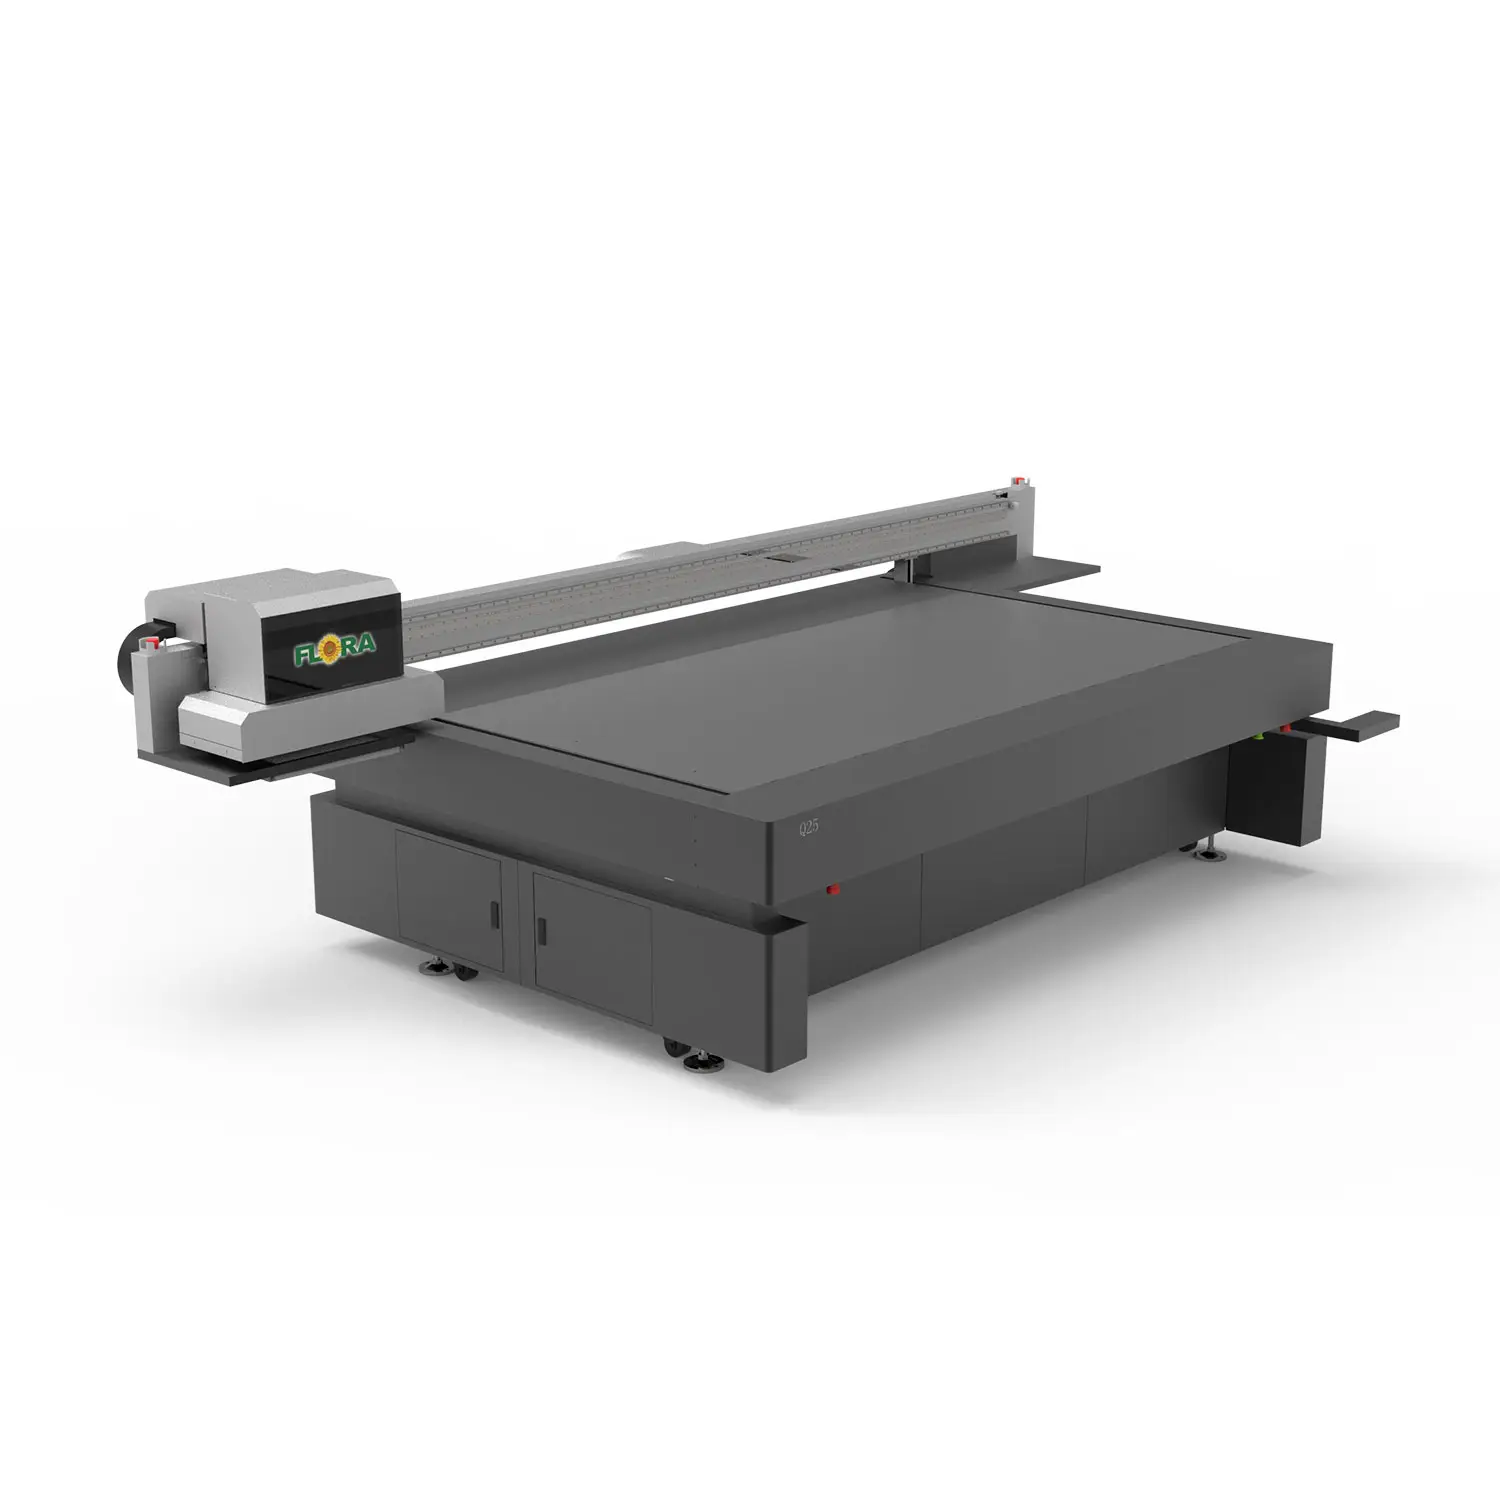 Flora CMYKV stampa digitale Plotter macchina a getto d'inchiostro UV Flatbed stampante 160cm I3200 grande formato Ecolvent stampante con lampada a LED